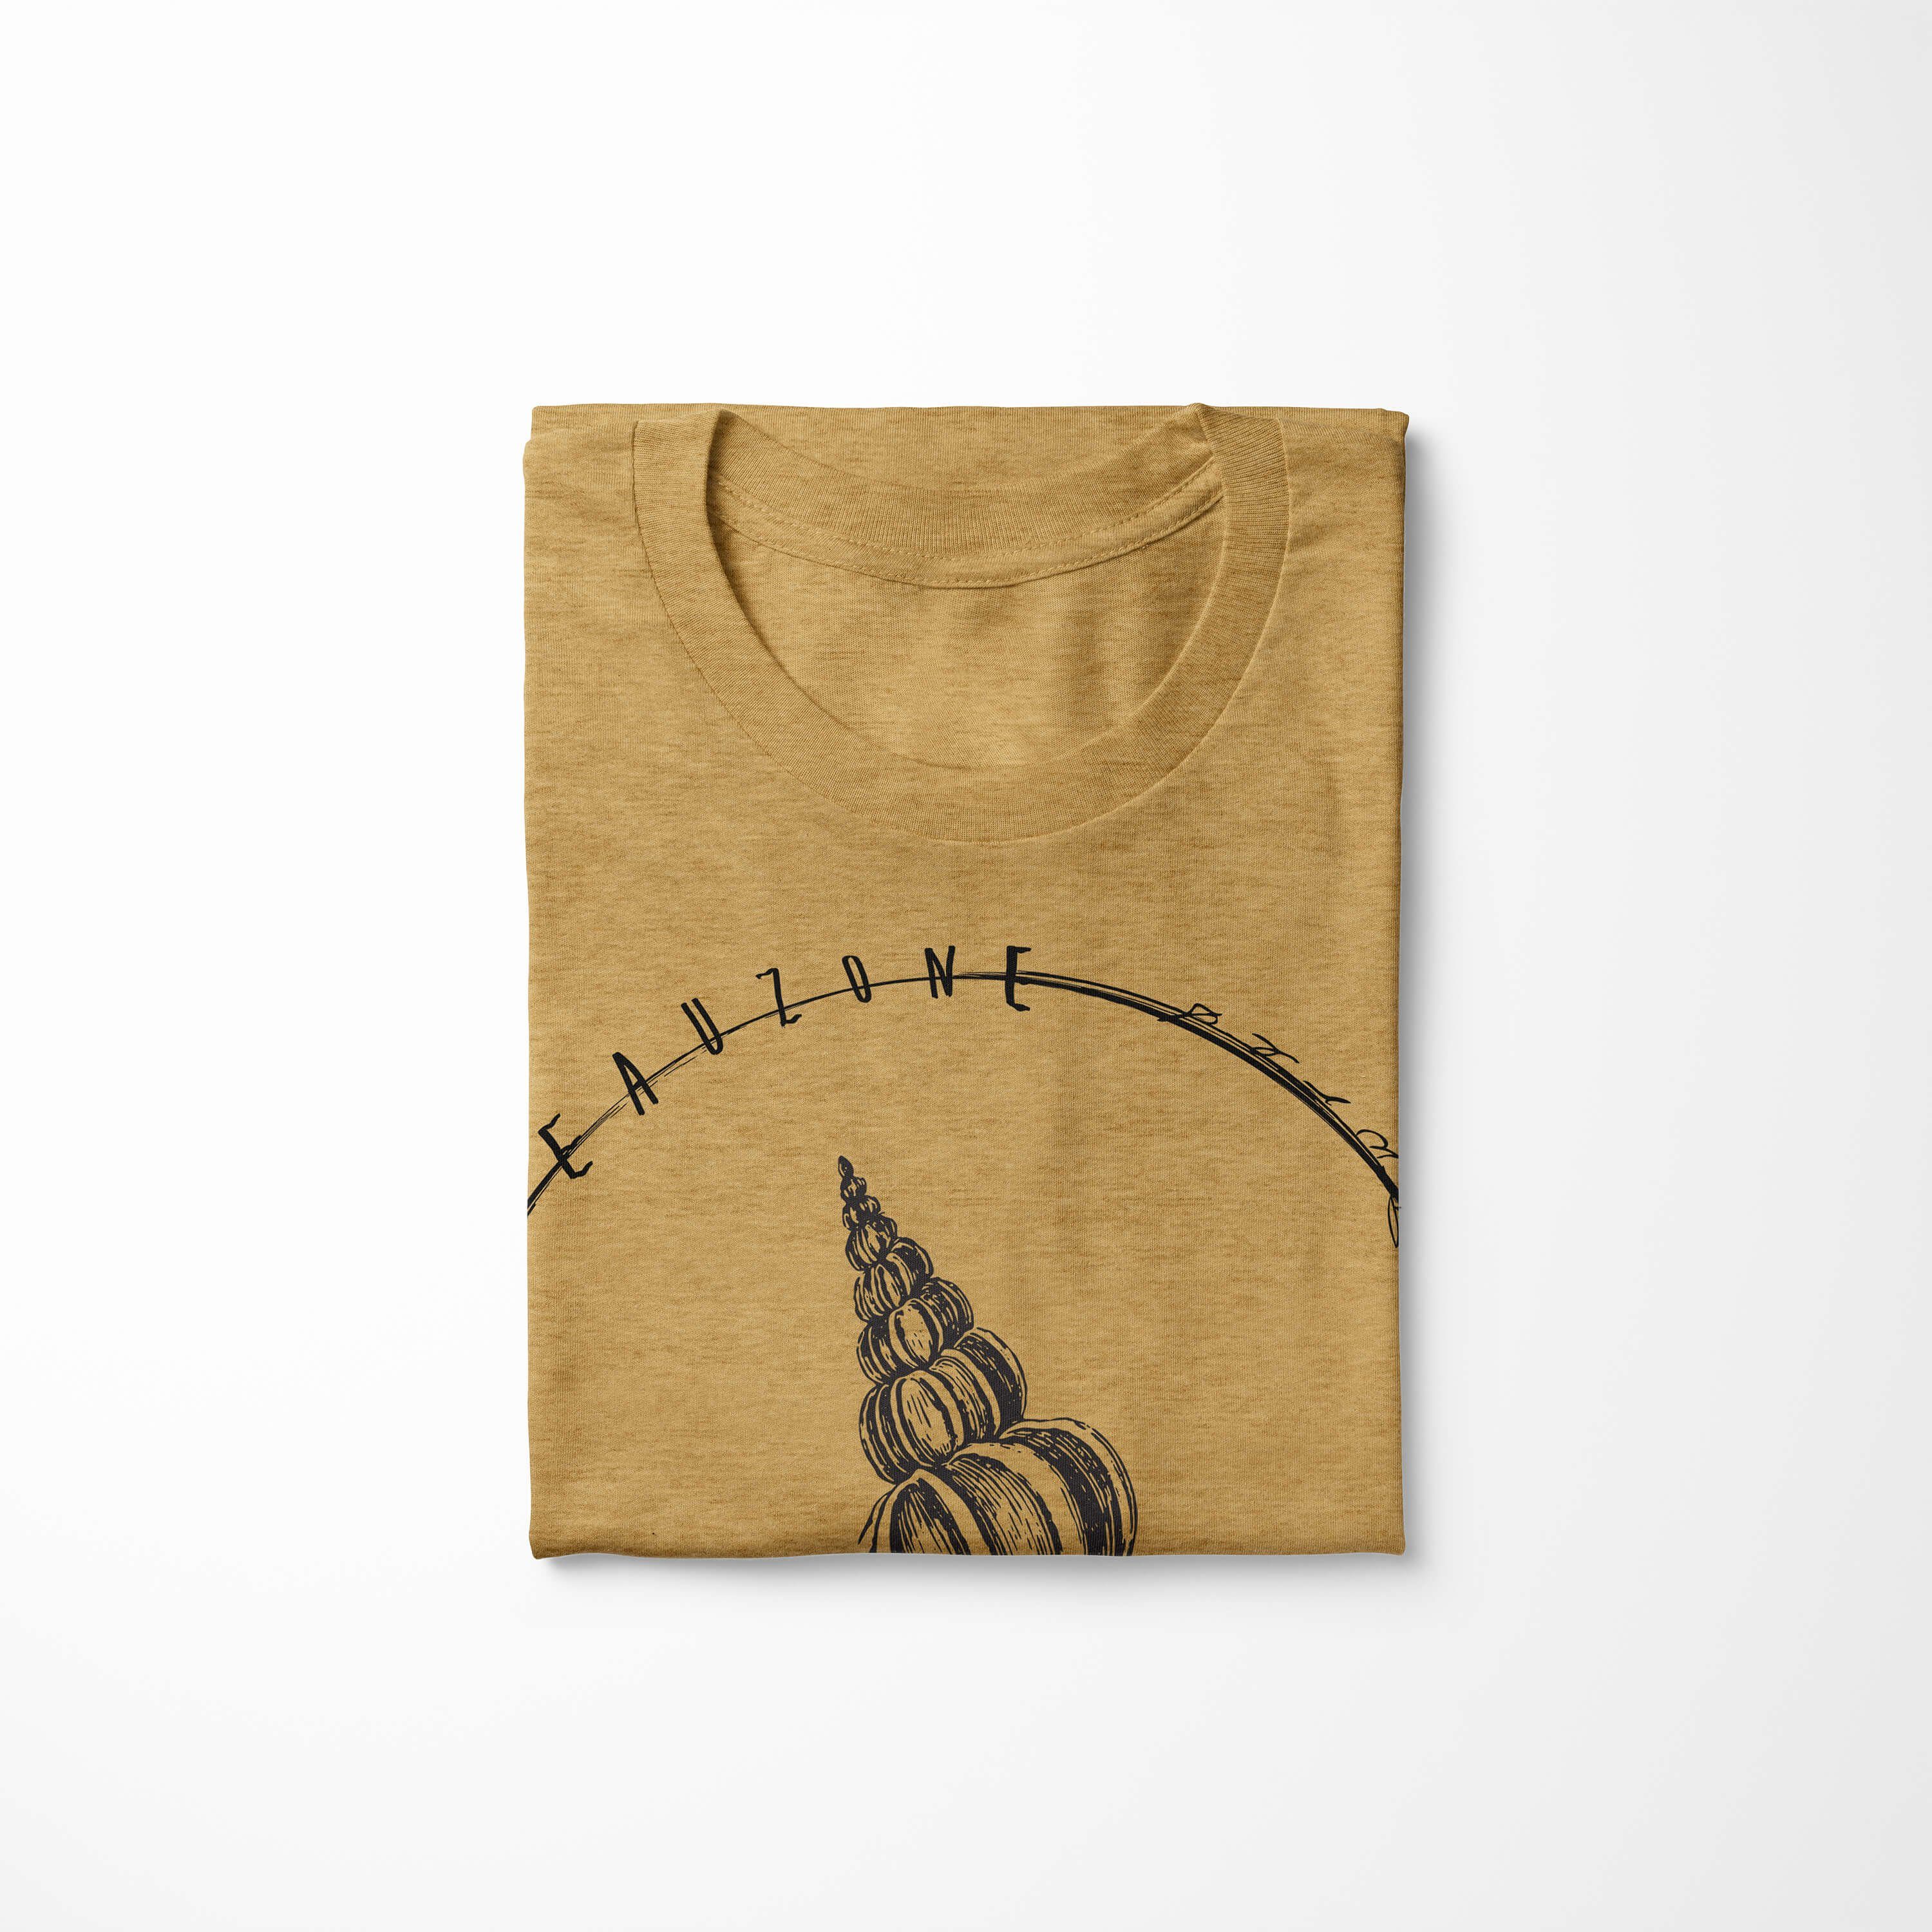 und - / T-Shirt Fische Tiefsee Art Serie: Sinus Antique Sea Sea Schnitt 026 Gold Creatures, Struktur feine sportlicher T-Shirt